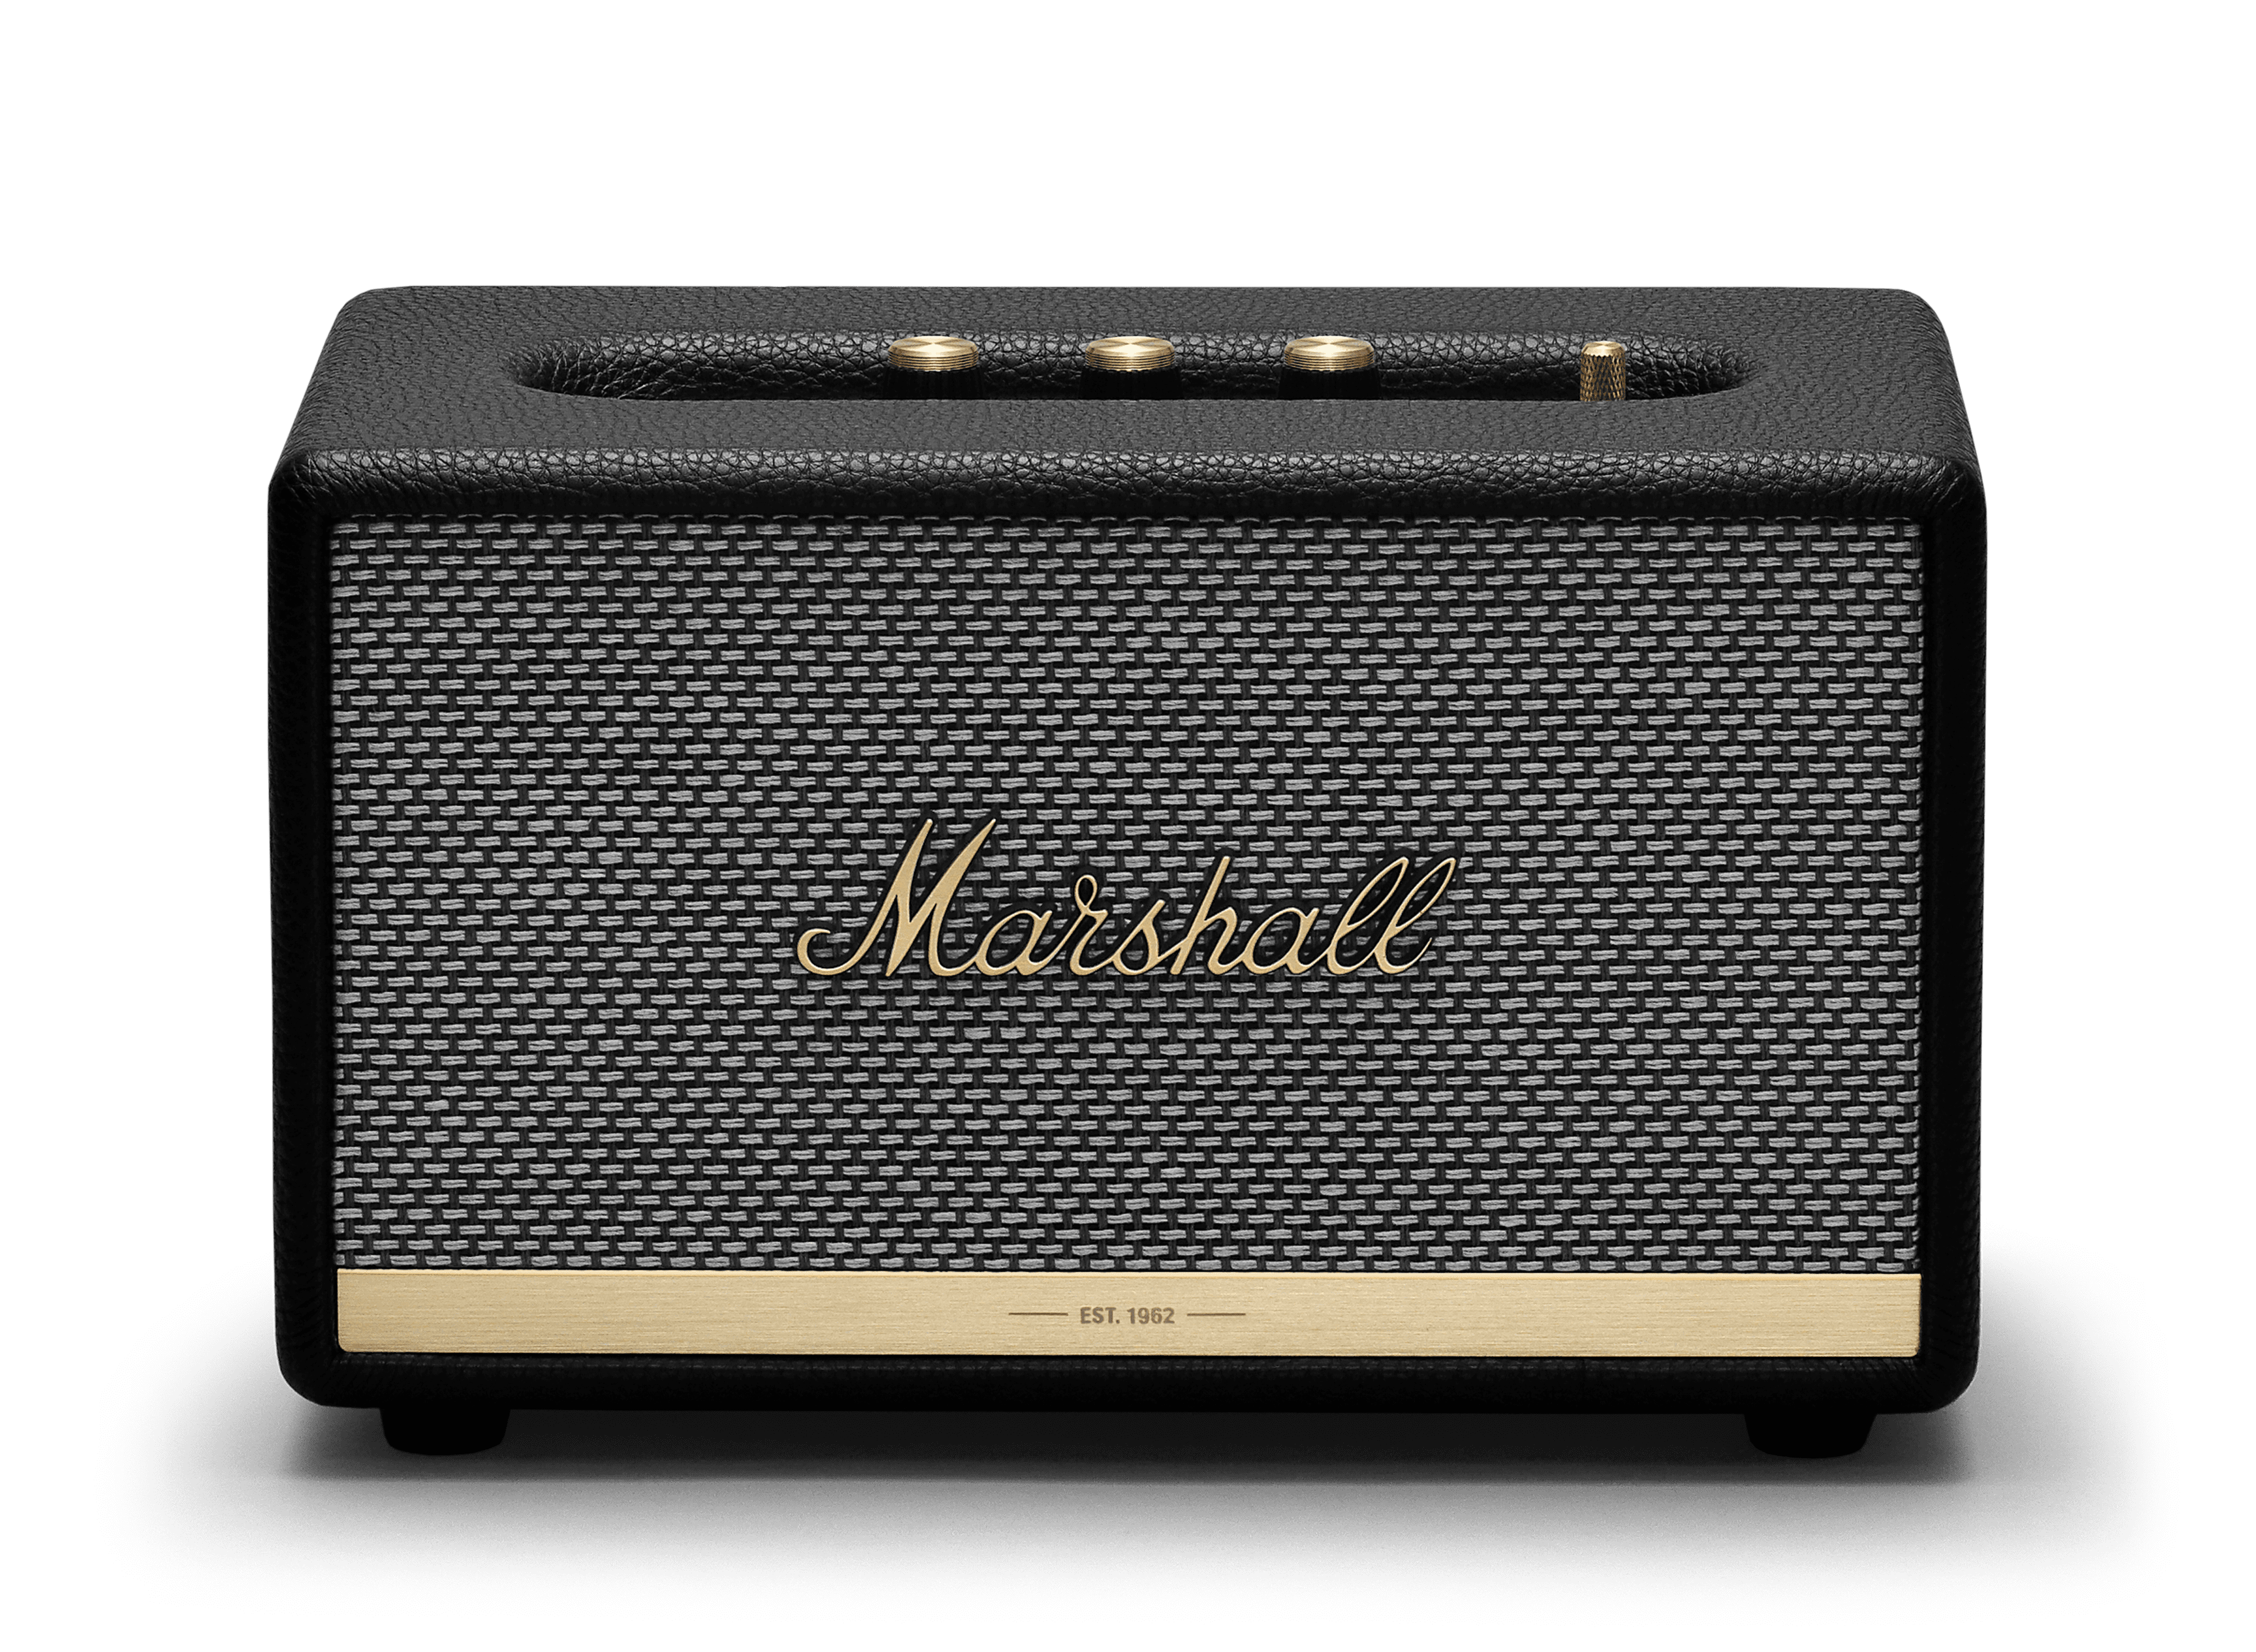 Marshall - Acton II Bluetooth Speaker - Black - BRAND NEW